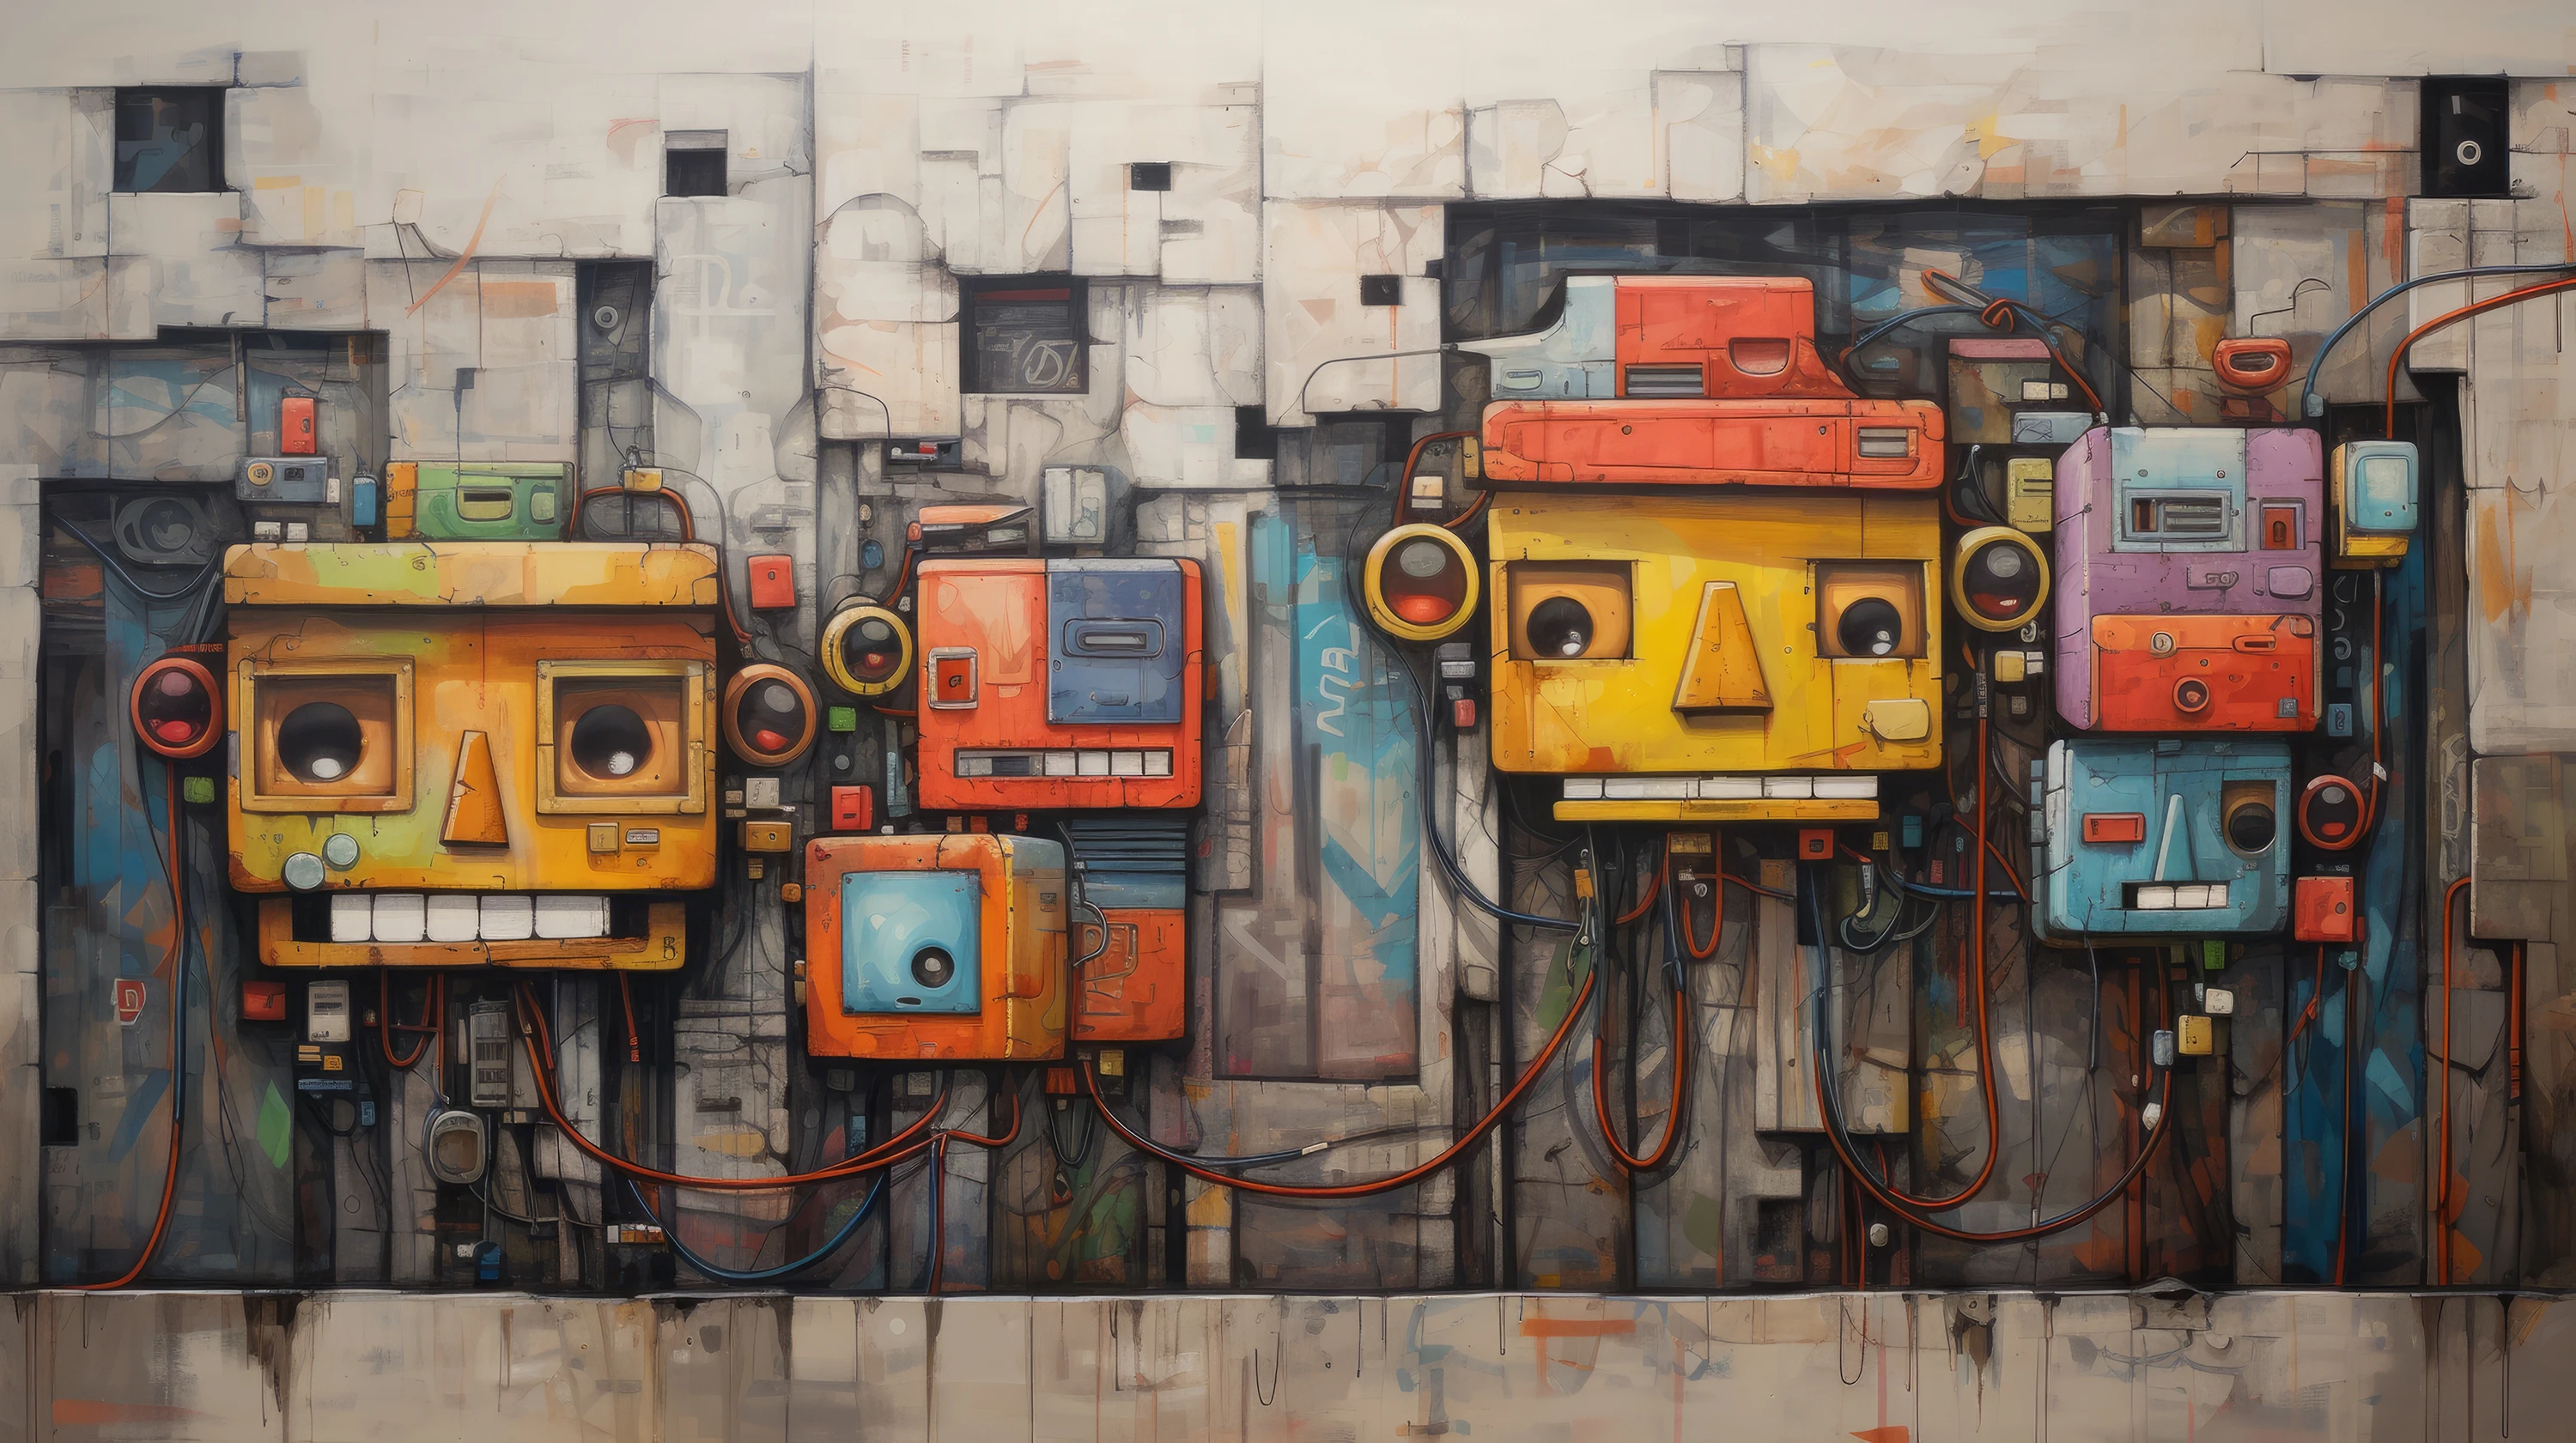 Eine surreale Komposition, die bunte mechanische Kisten vor einer Betonwand zeigt.